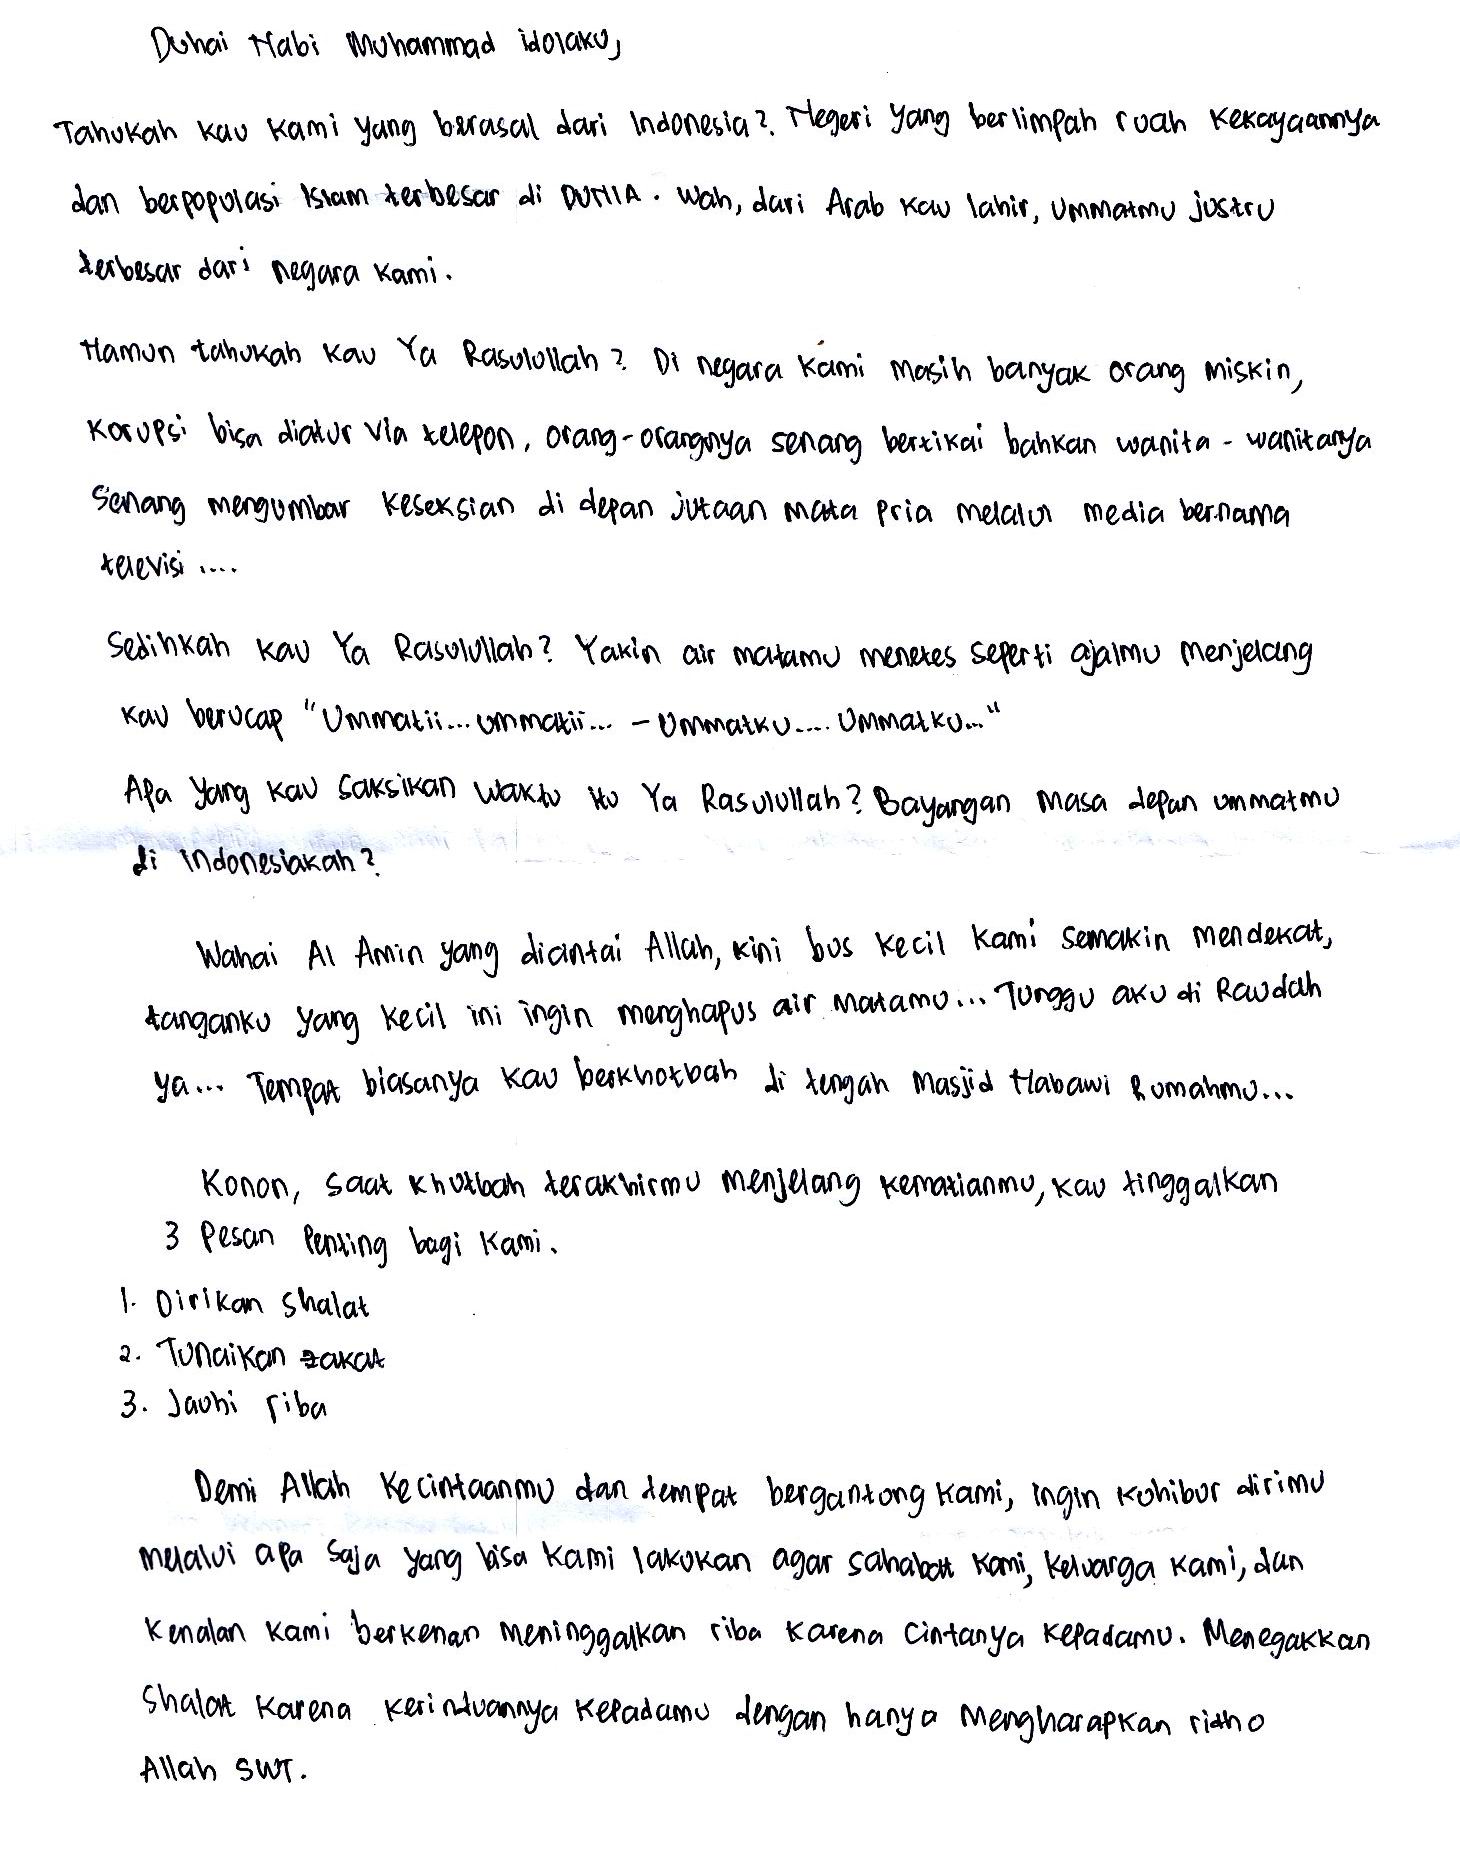 SMA UMAR MASUD SANGKAPURA BAWEAN GRESIK EAST JAVA INDONESIA